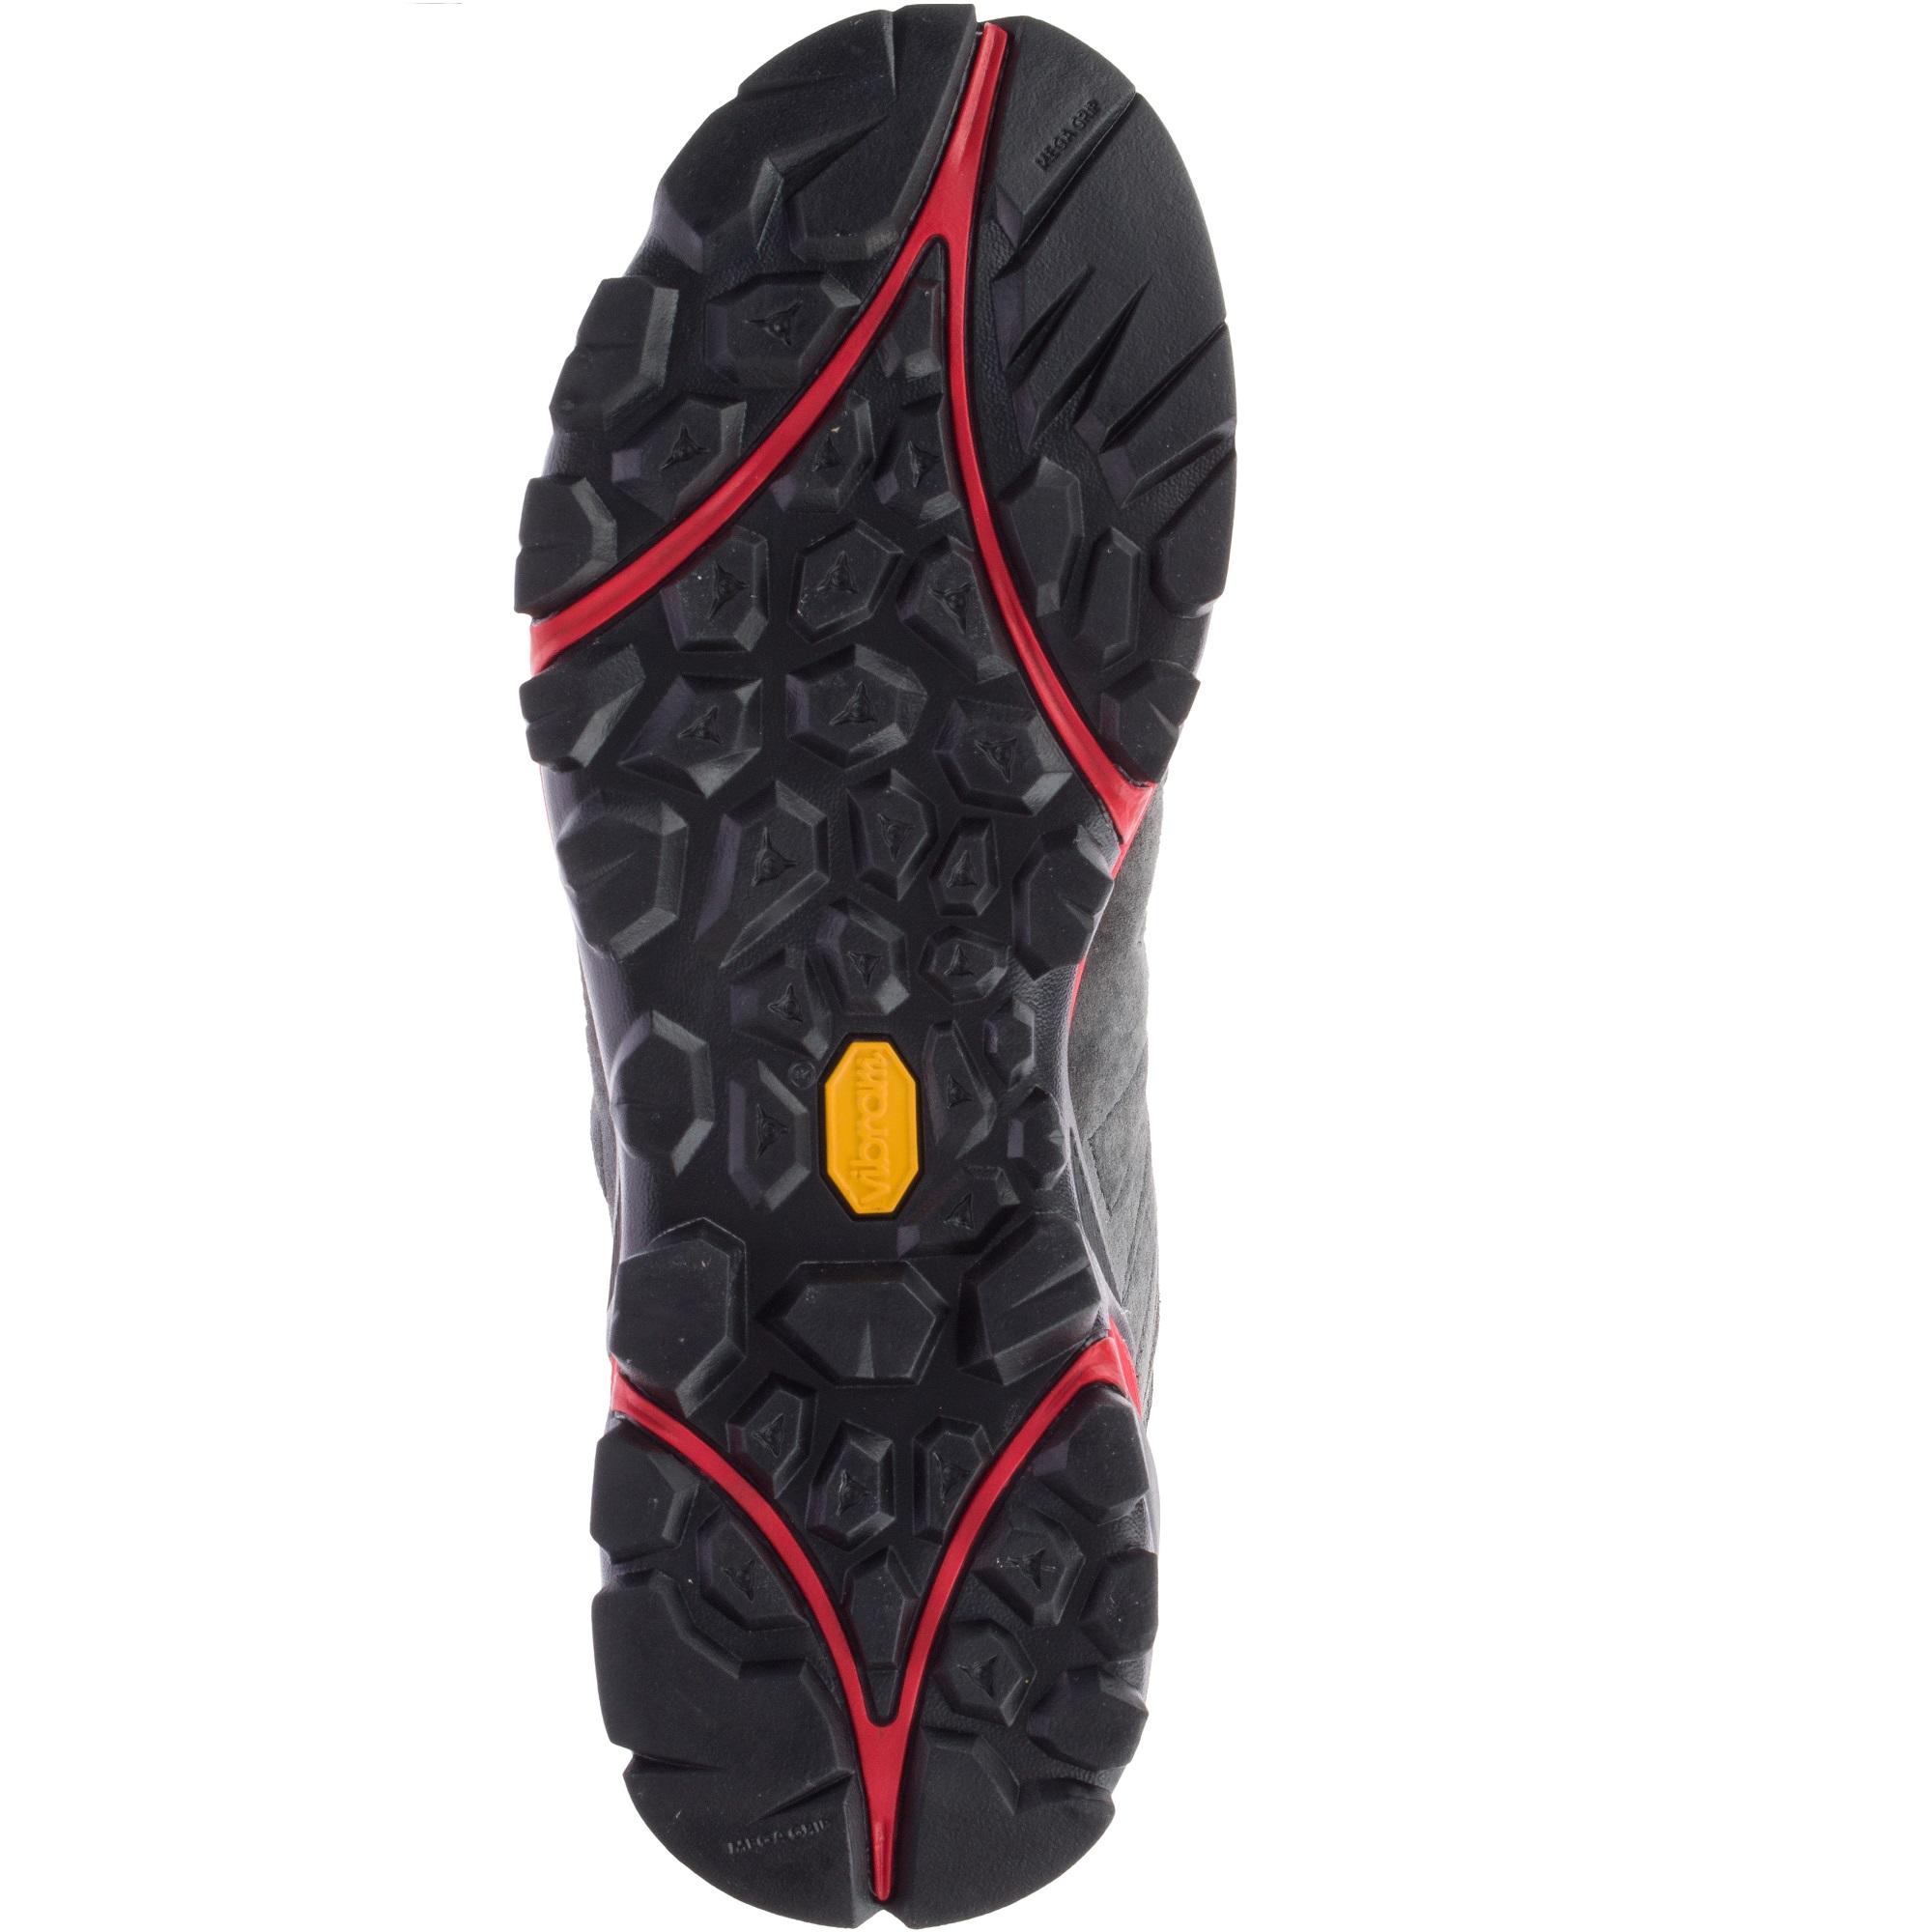 Men's waterproof walking boots - Merrell Capra Mid Gore-tex 3/5